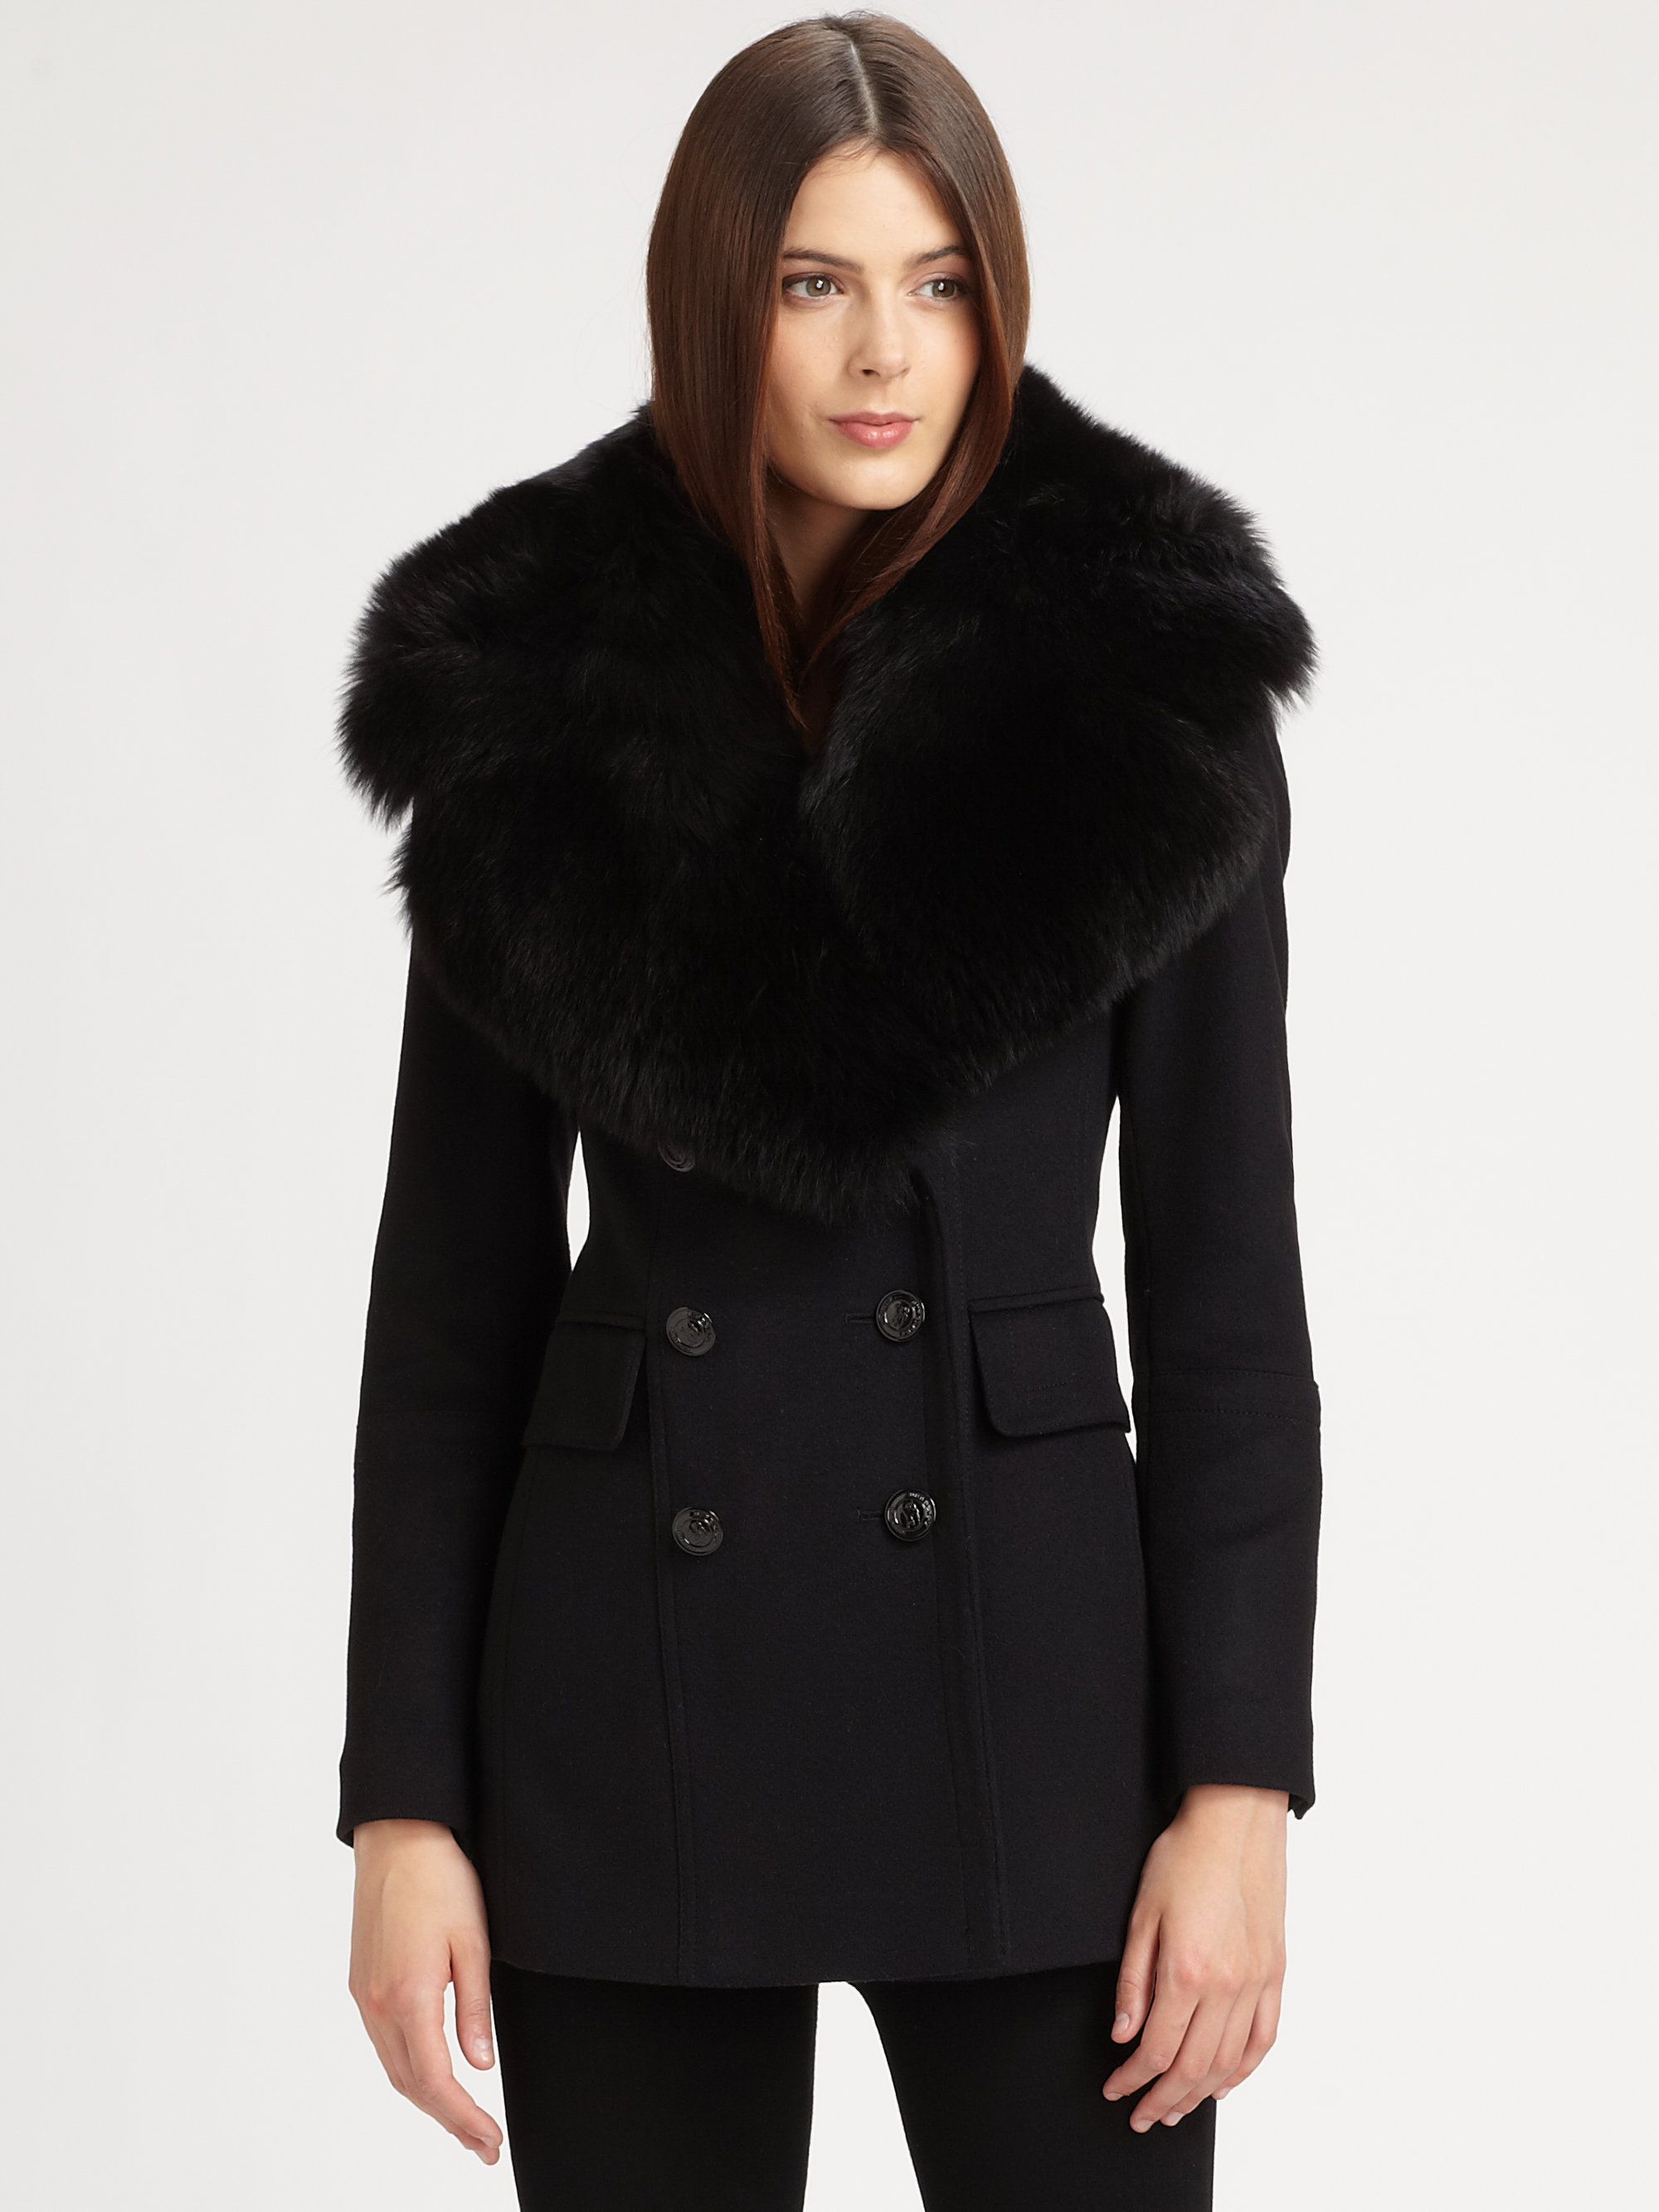 Black Coat With Fur Trim